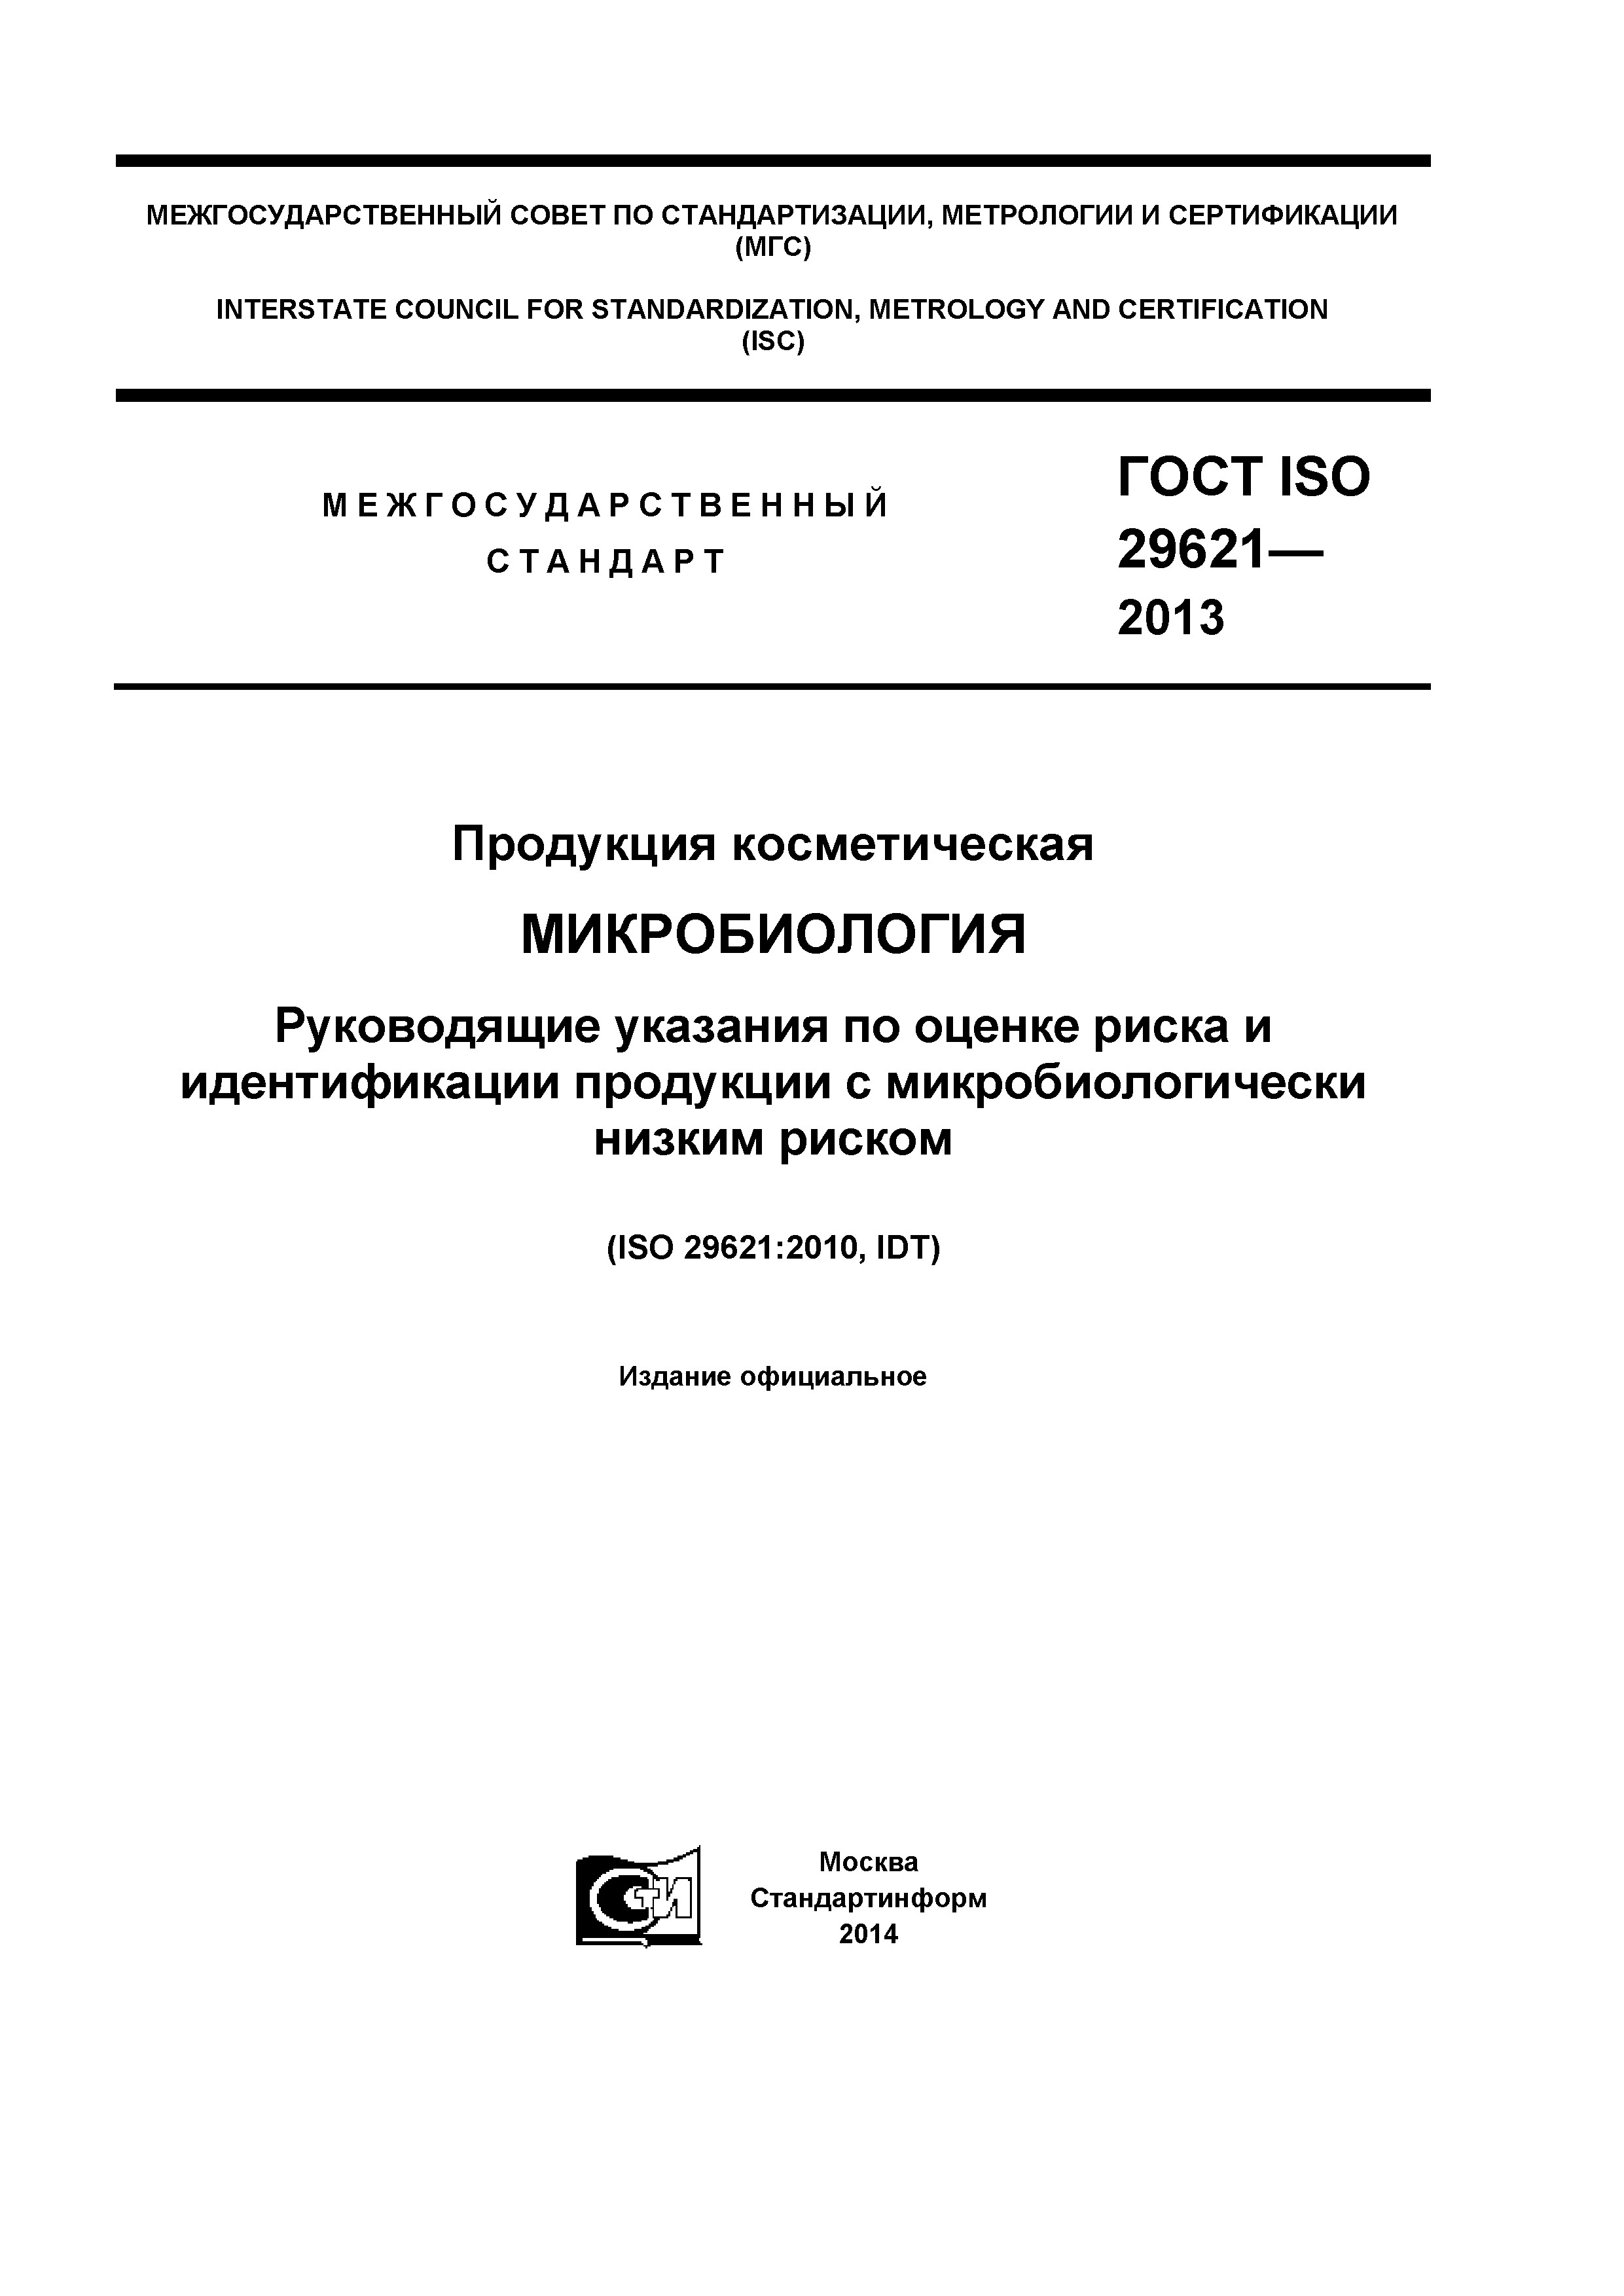 ГОСТ ISO 29621-2013